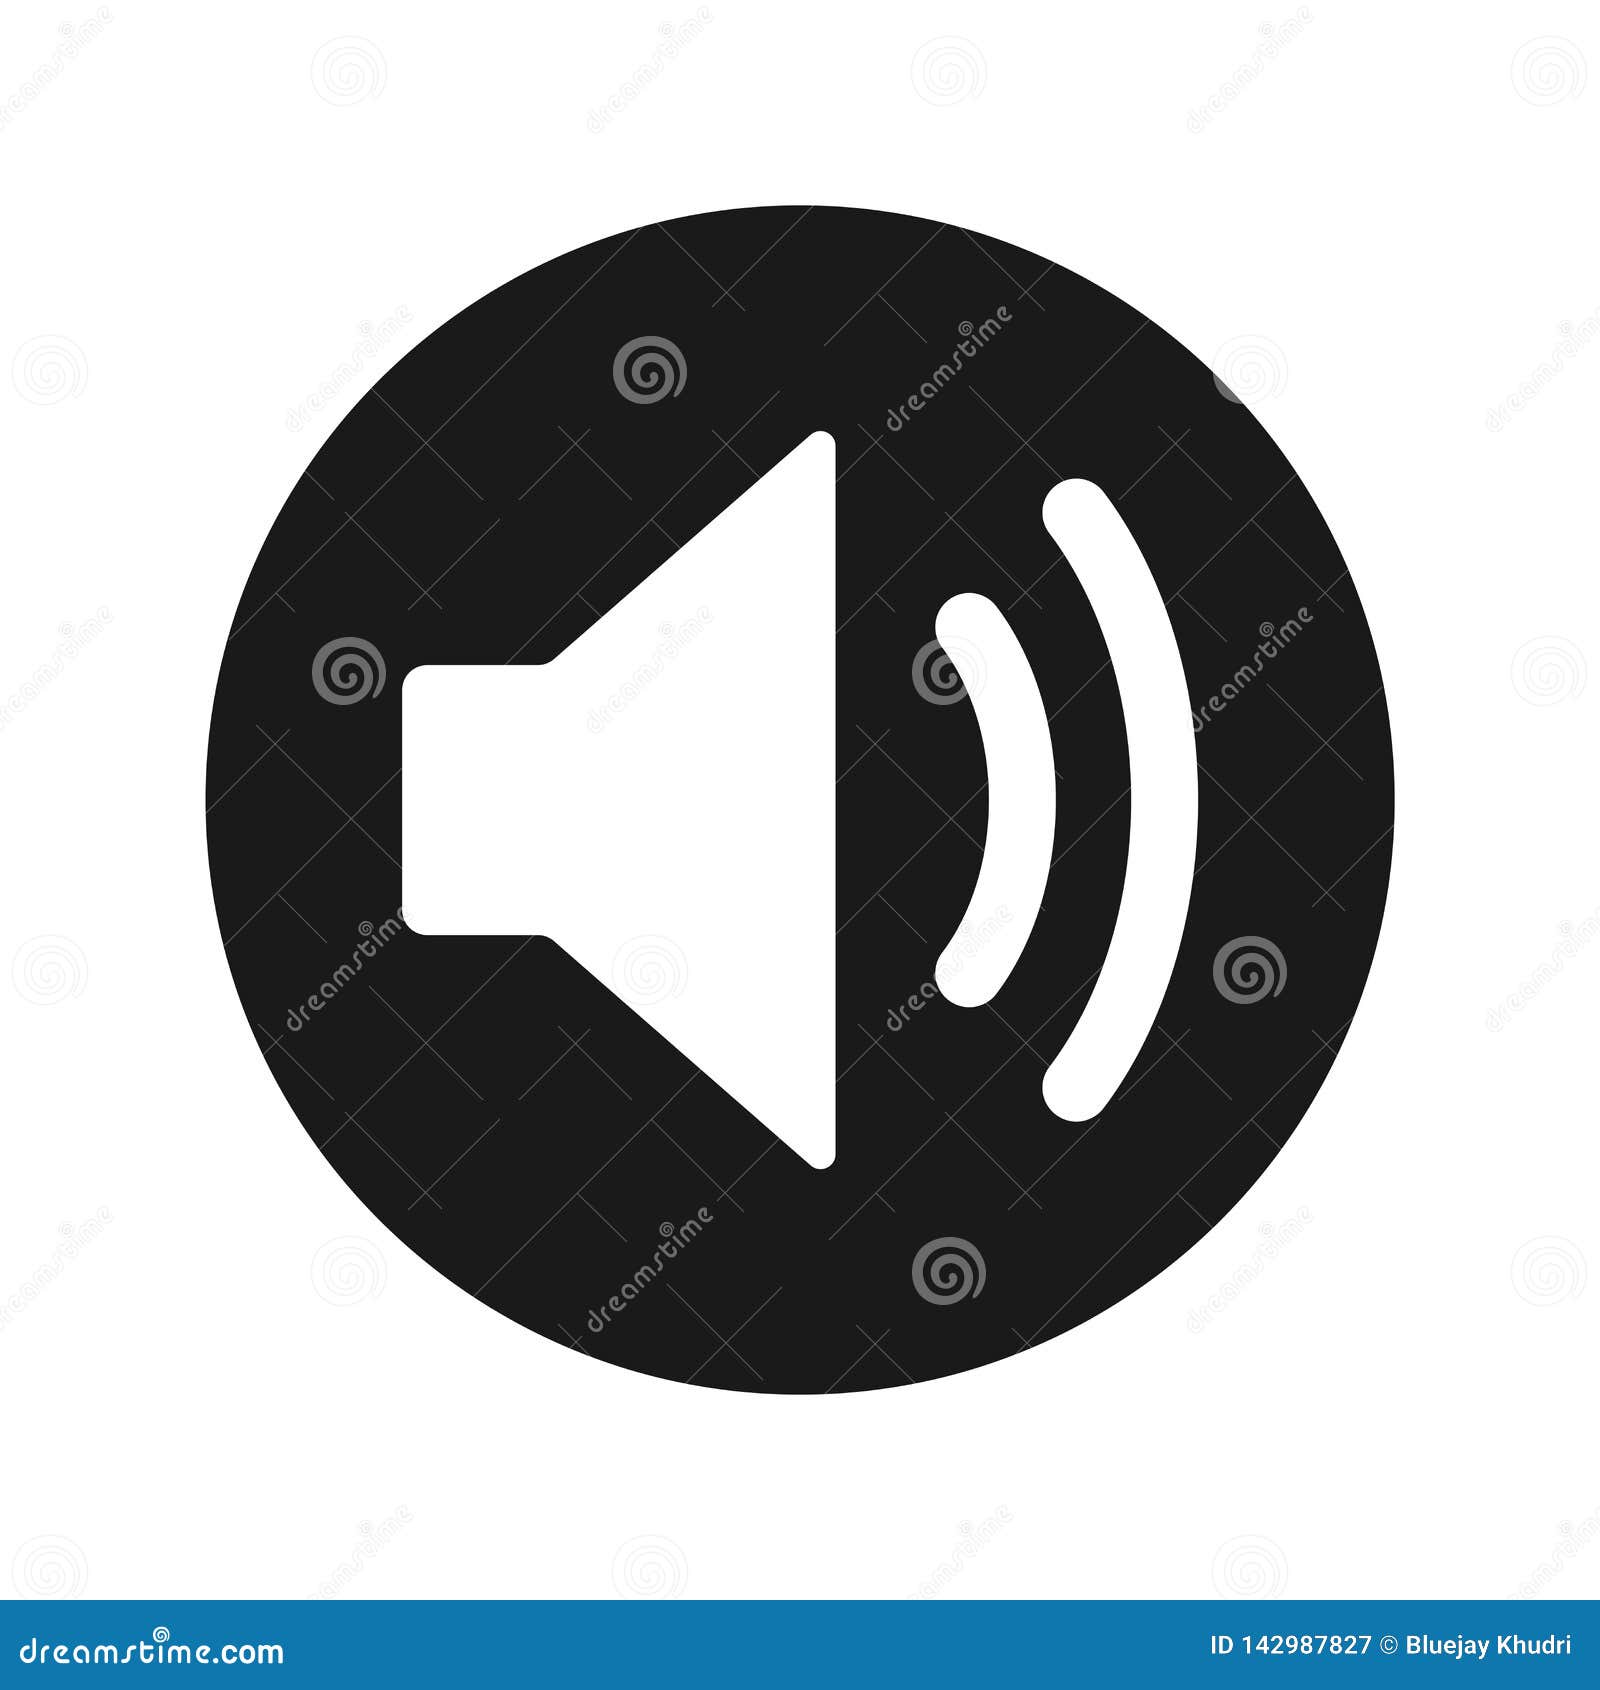 volume speaker icon flat black round button  